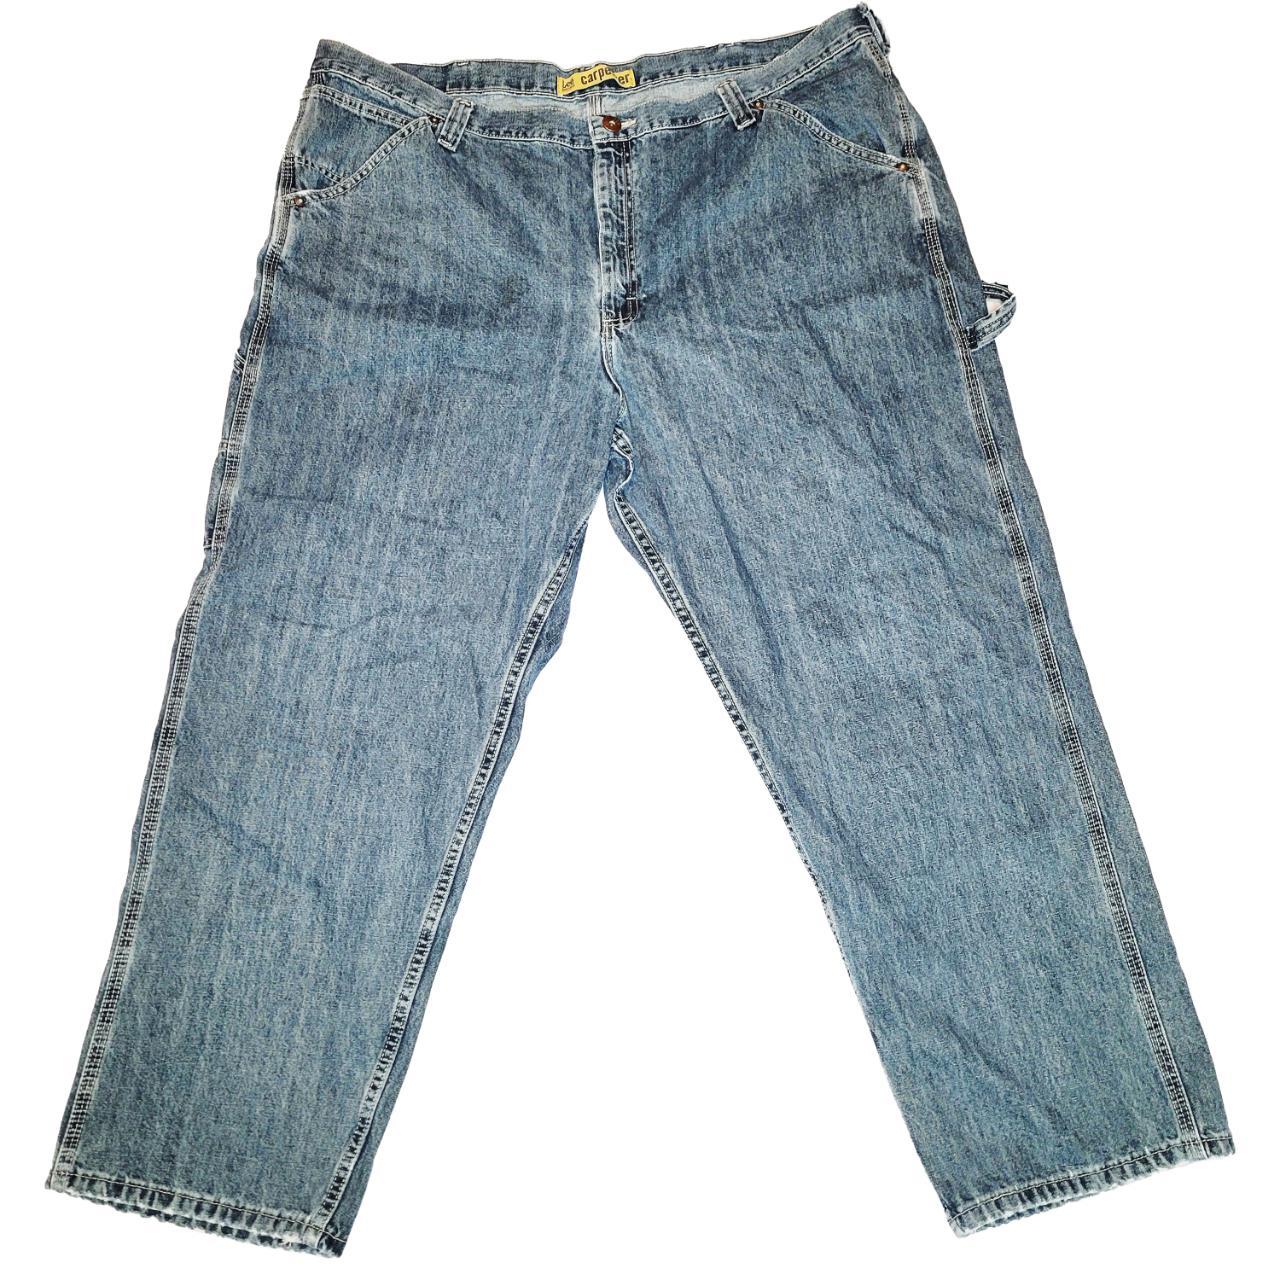 46x30 Lee Carpenter Jeans Baggy Broken in #Baggy... - Depop